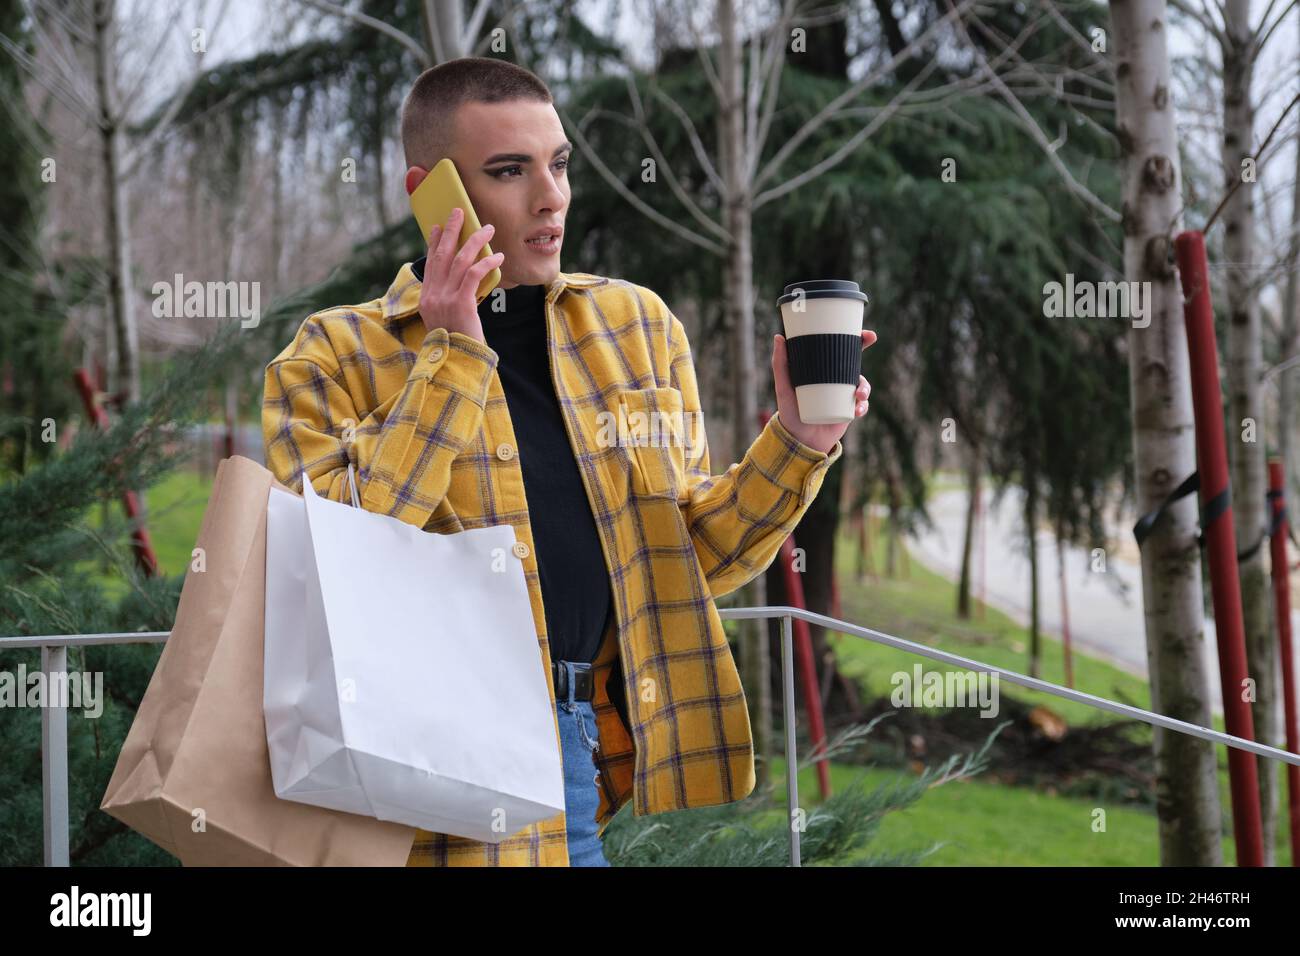 Jeune homme avec maquillage parler sur le smartphone avec des sacs d'achats. Banque D'Images